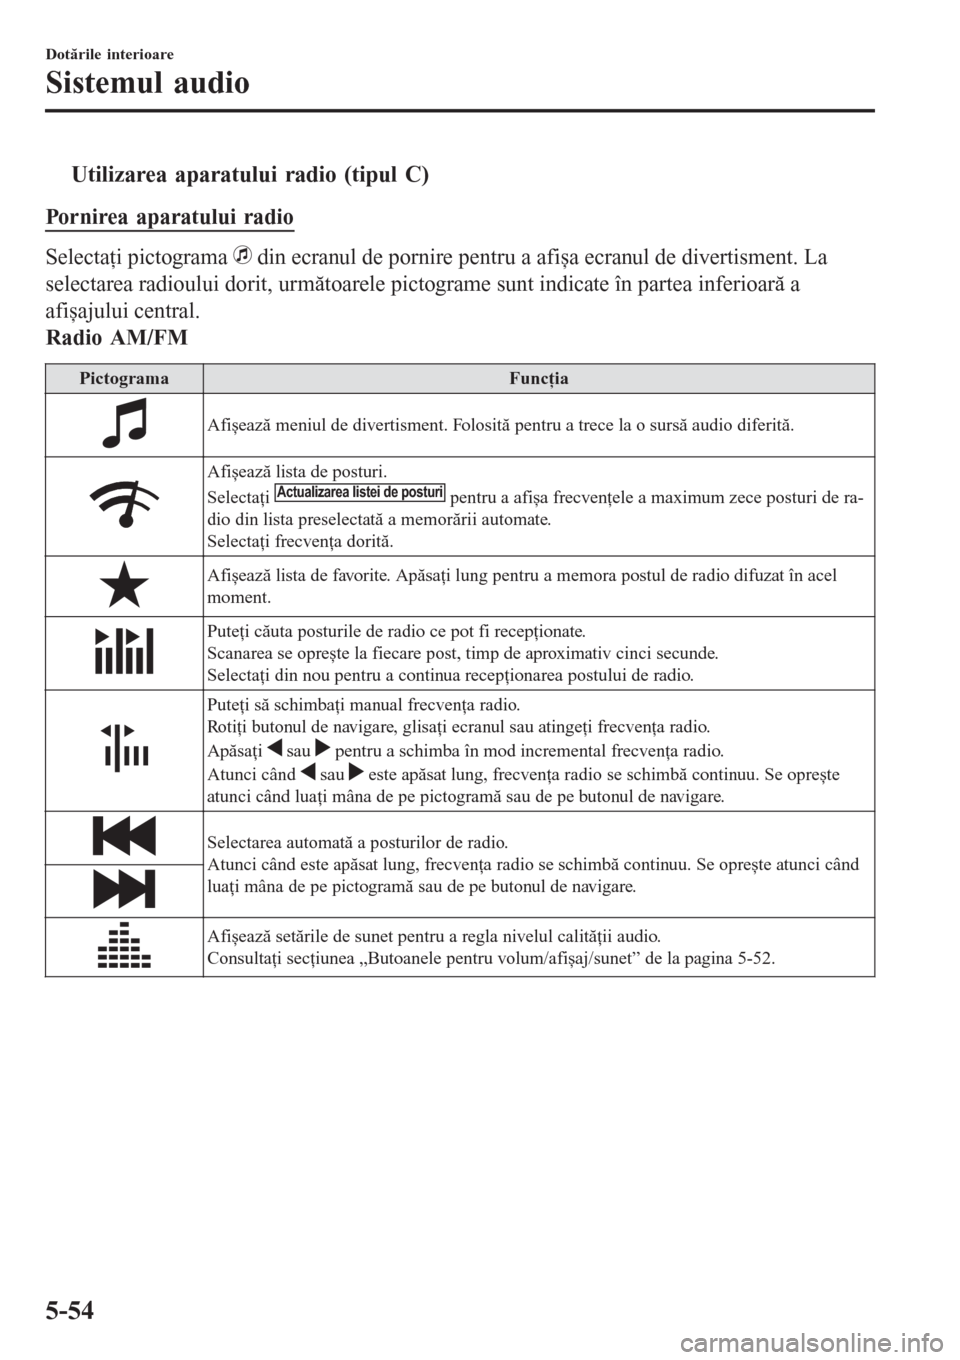 MAZDA MODEL 3 HATCHBACK 2015  Ghid introductiv (in romanian) tUtilizarea aparatului radio (tipul C)
Pornirea aparatului radio
Selectaţi pictograma  din ecranul de pornire pentru a afișa ecranul de divertisment. La
selectarea radioului dorit, următoarele pict